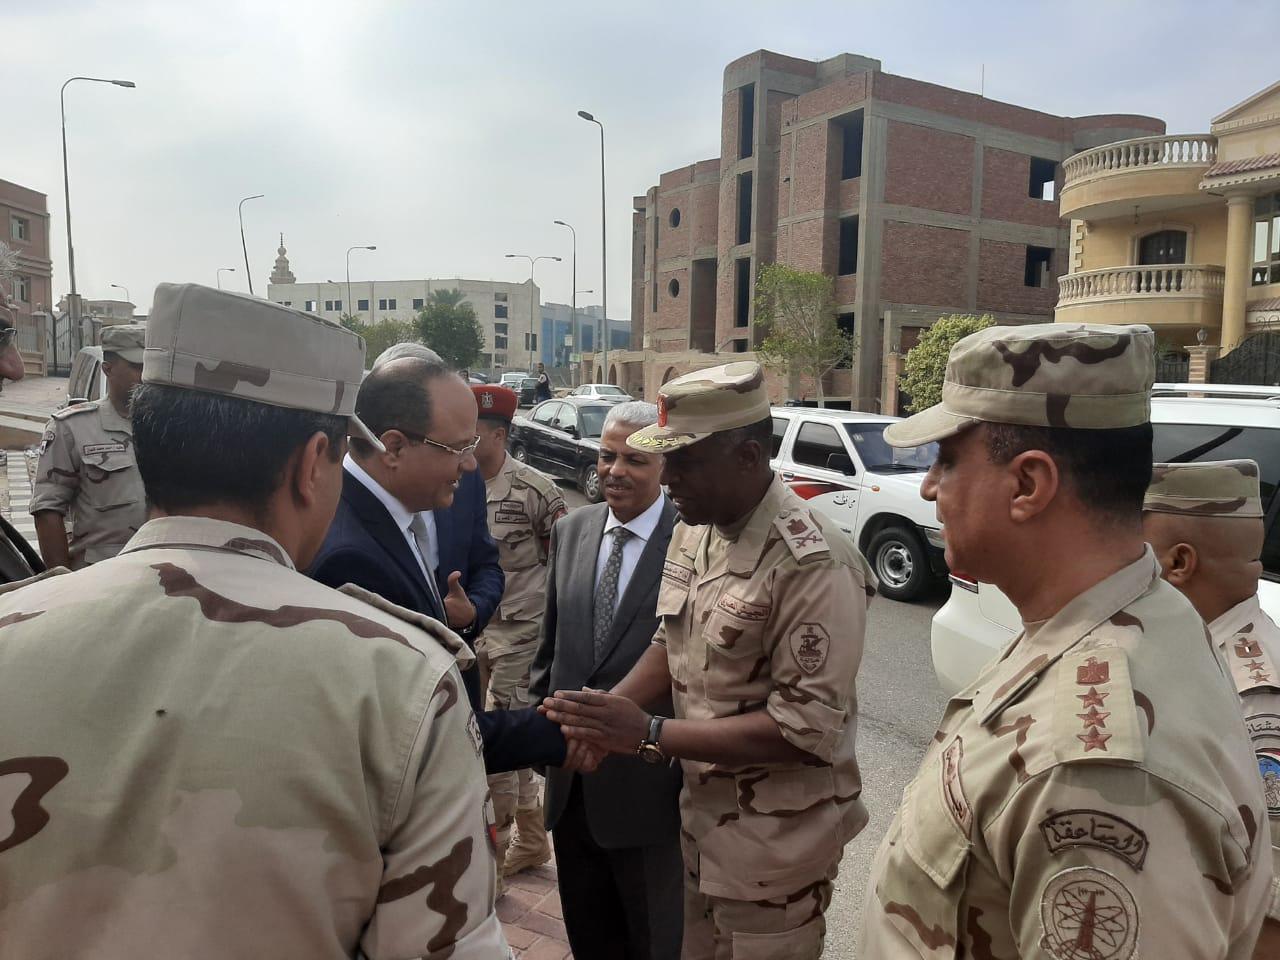   السكرتير العام لمحافظة القليوبية يشهد الندوة التثقيفية الحادية عشر التي تنظمها القوات المسلحة بالمدارس المصرية